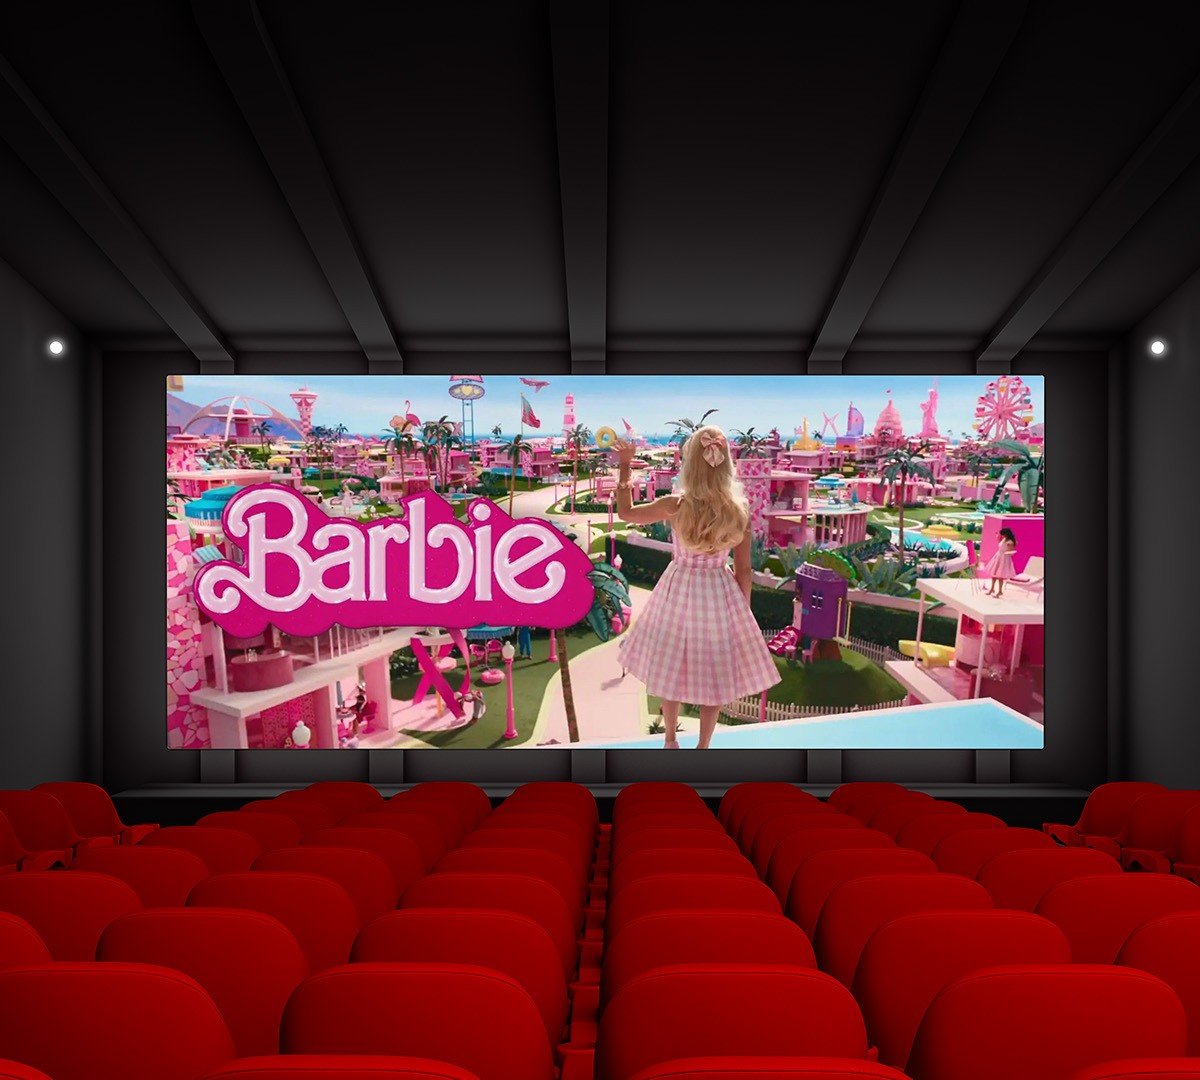 Filme 'Barbie' ultrapassa US$ 1 bilhão em bilheteria, Eu 